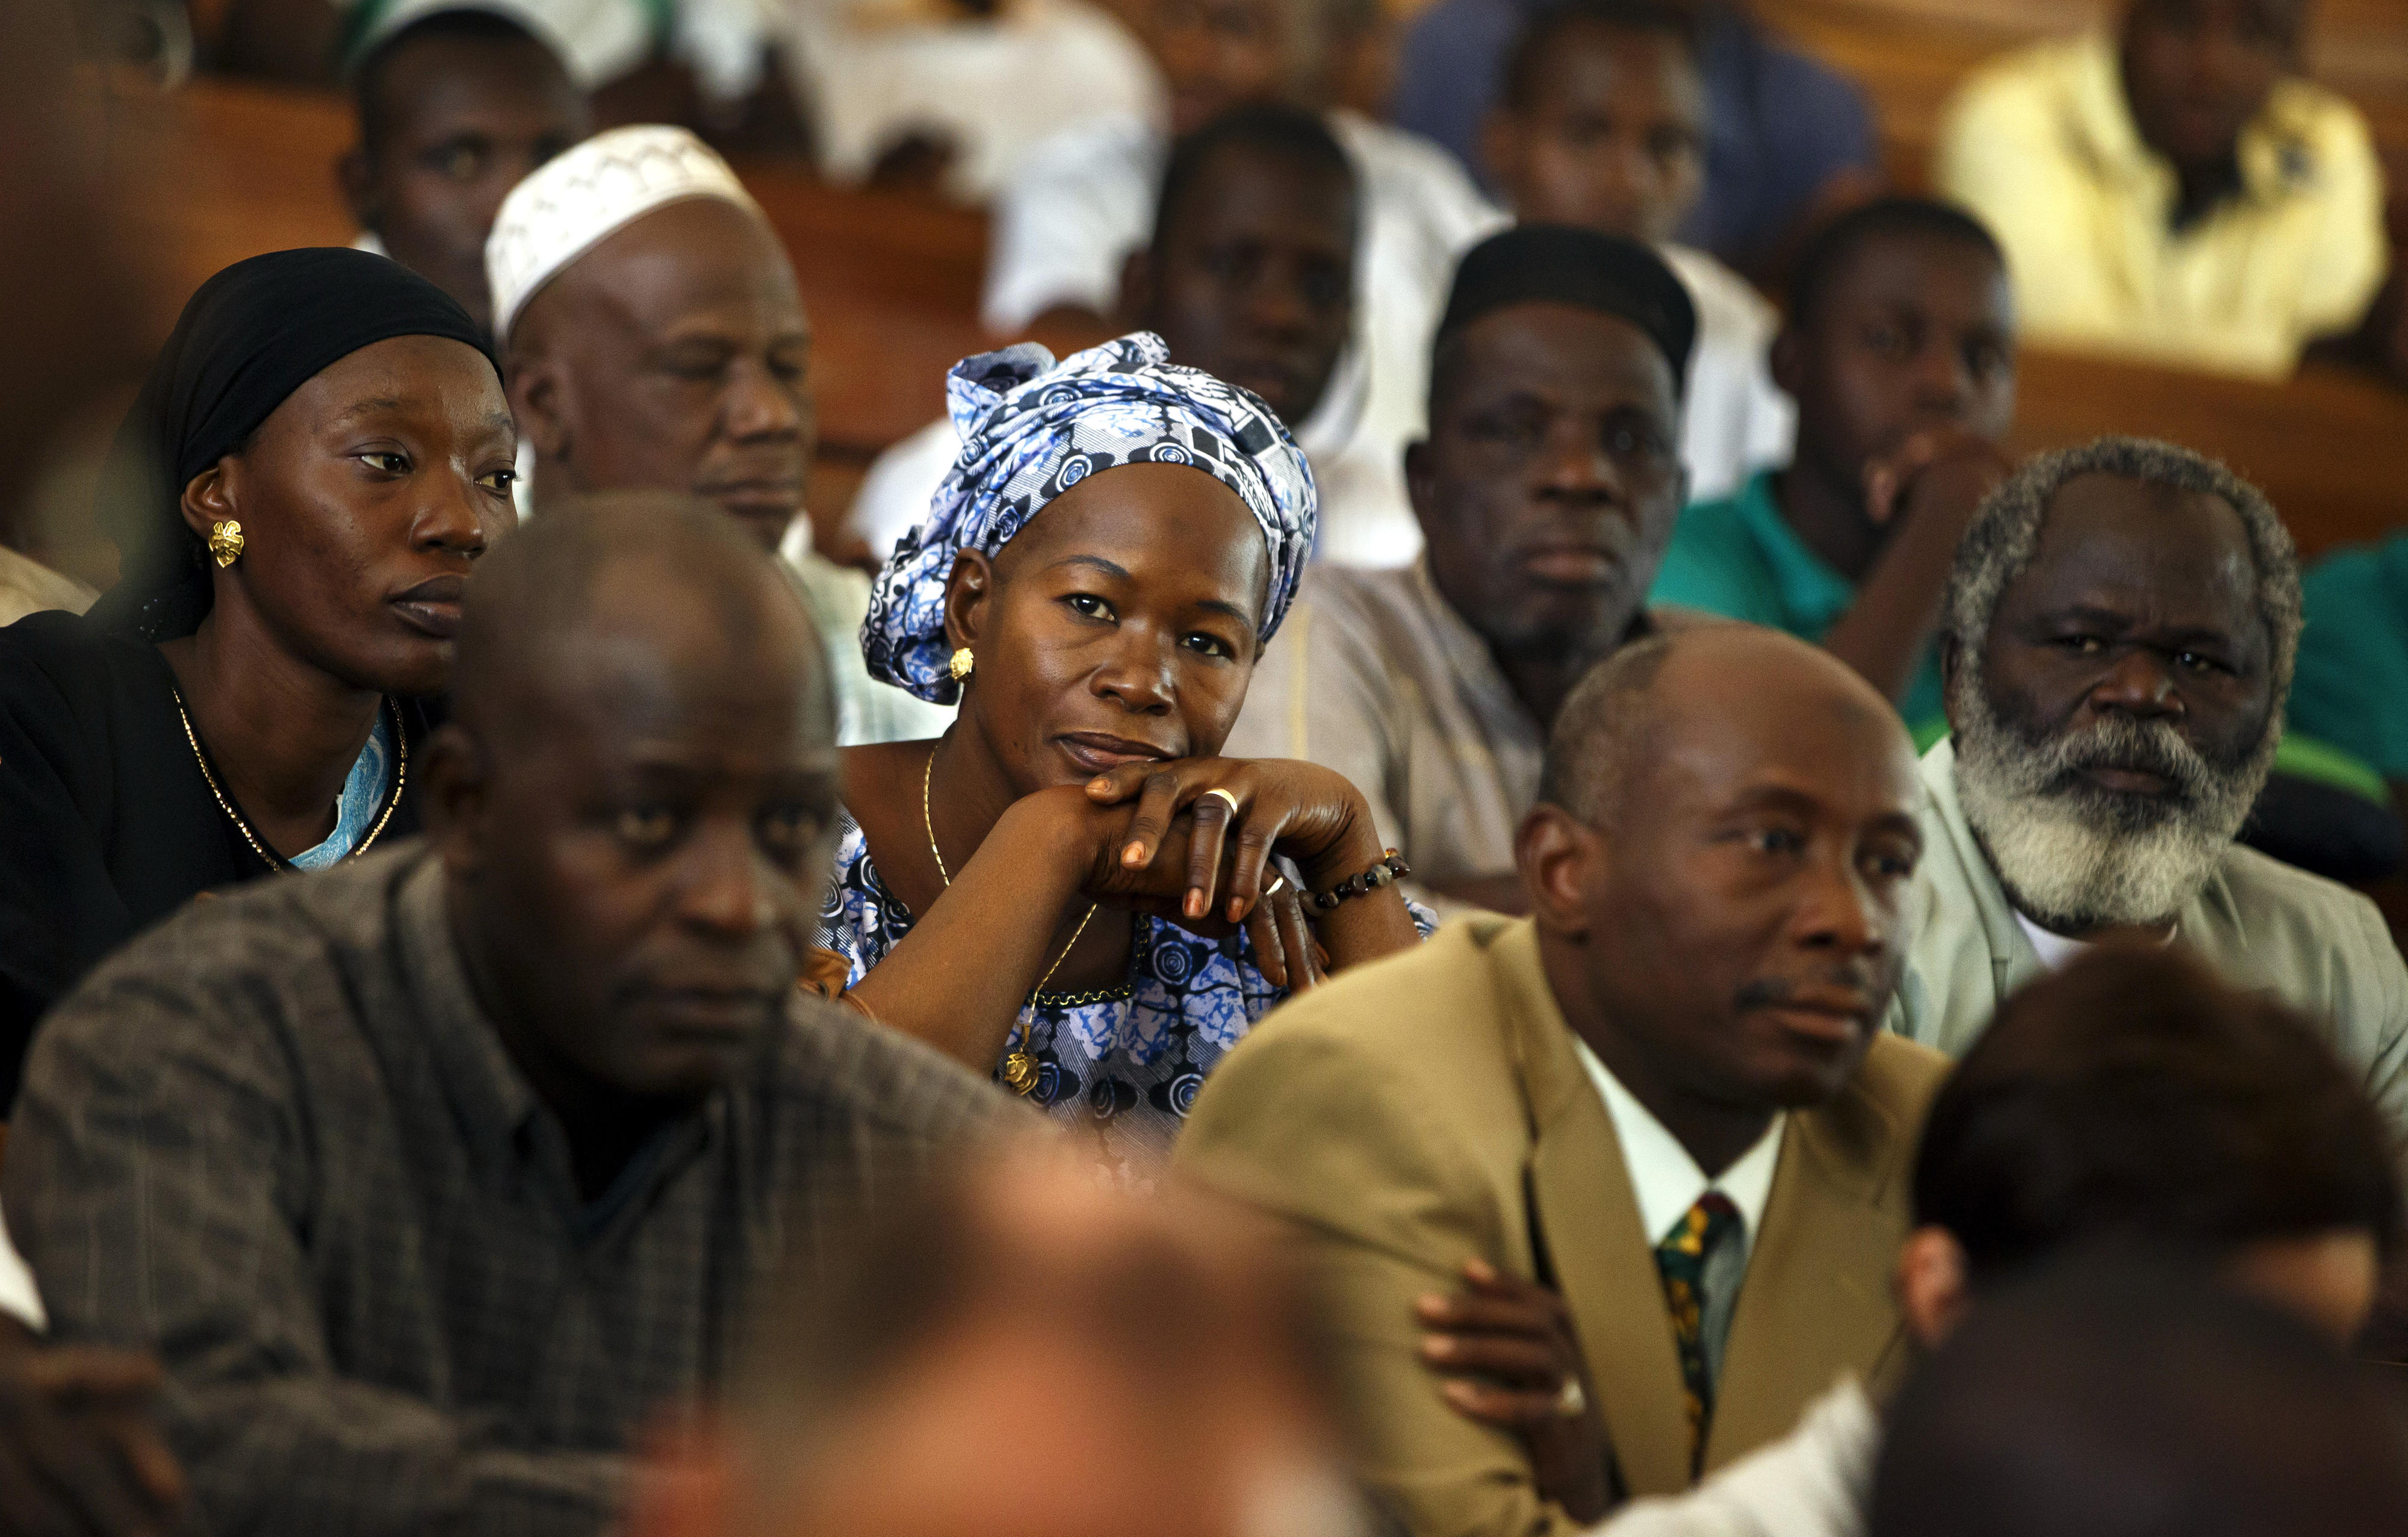 Bild aus einem Hörsaal des Instituts für angewandte Agrarforschung und Ausbildung in Katibougou, Mali. In der Bildmitte zwei Frauen, um sie herum Männer